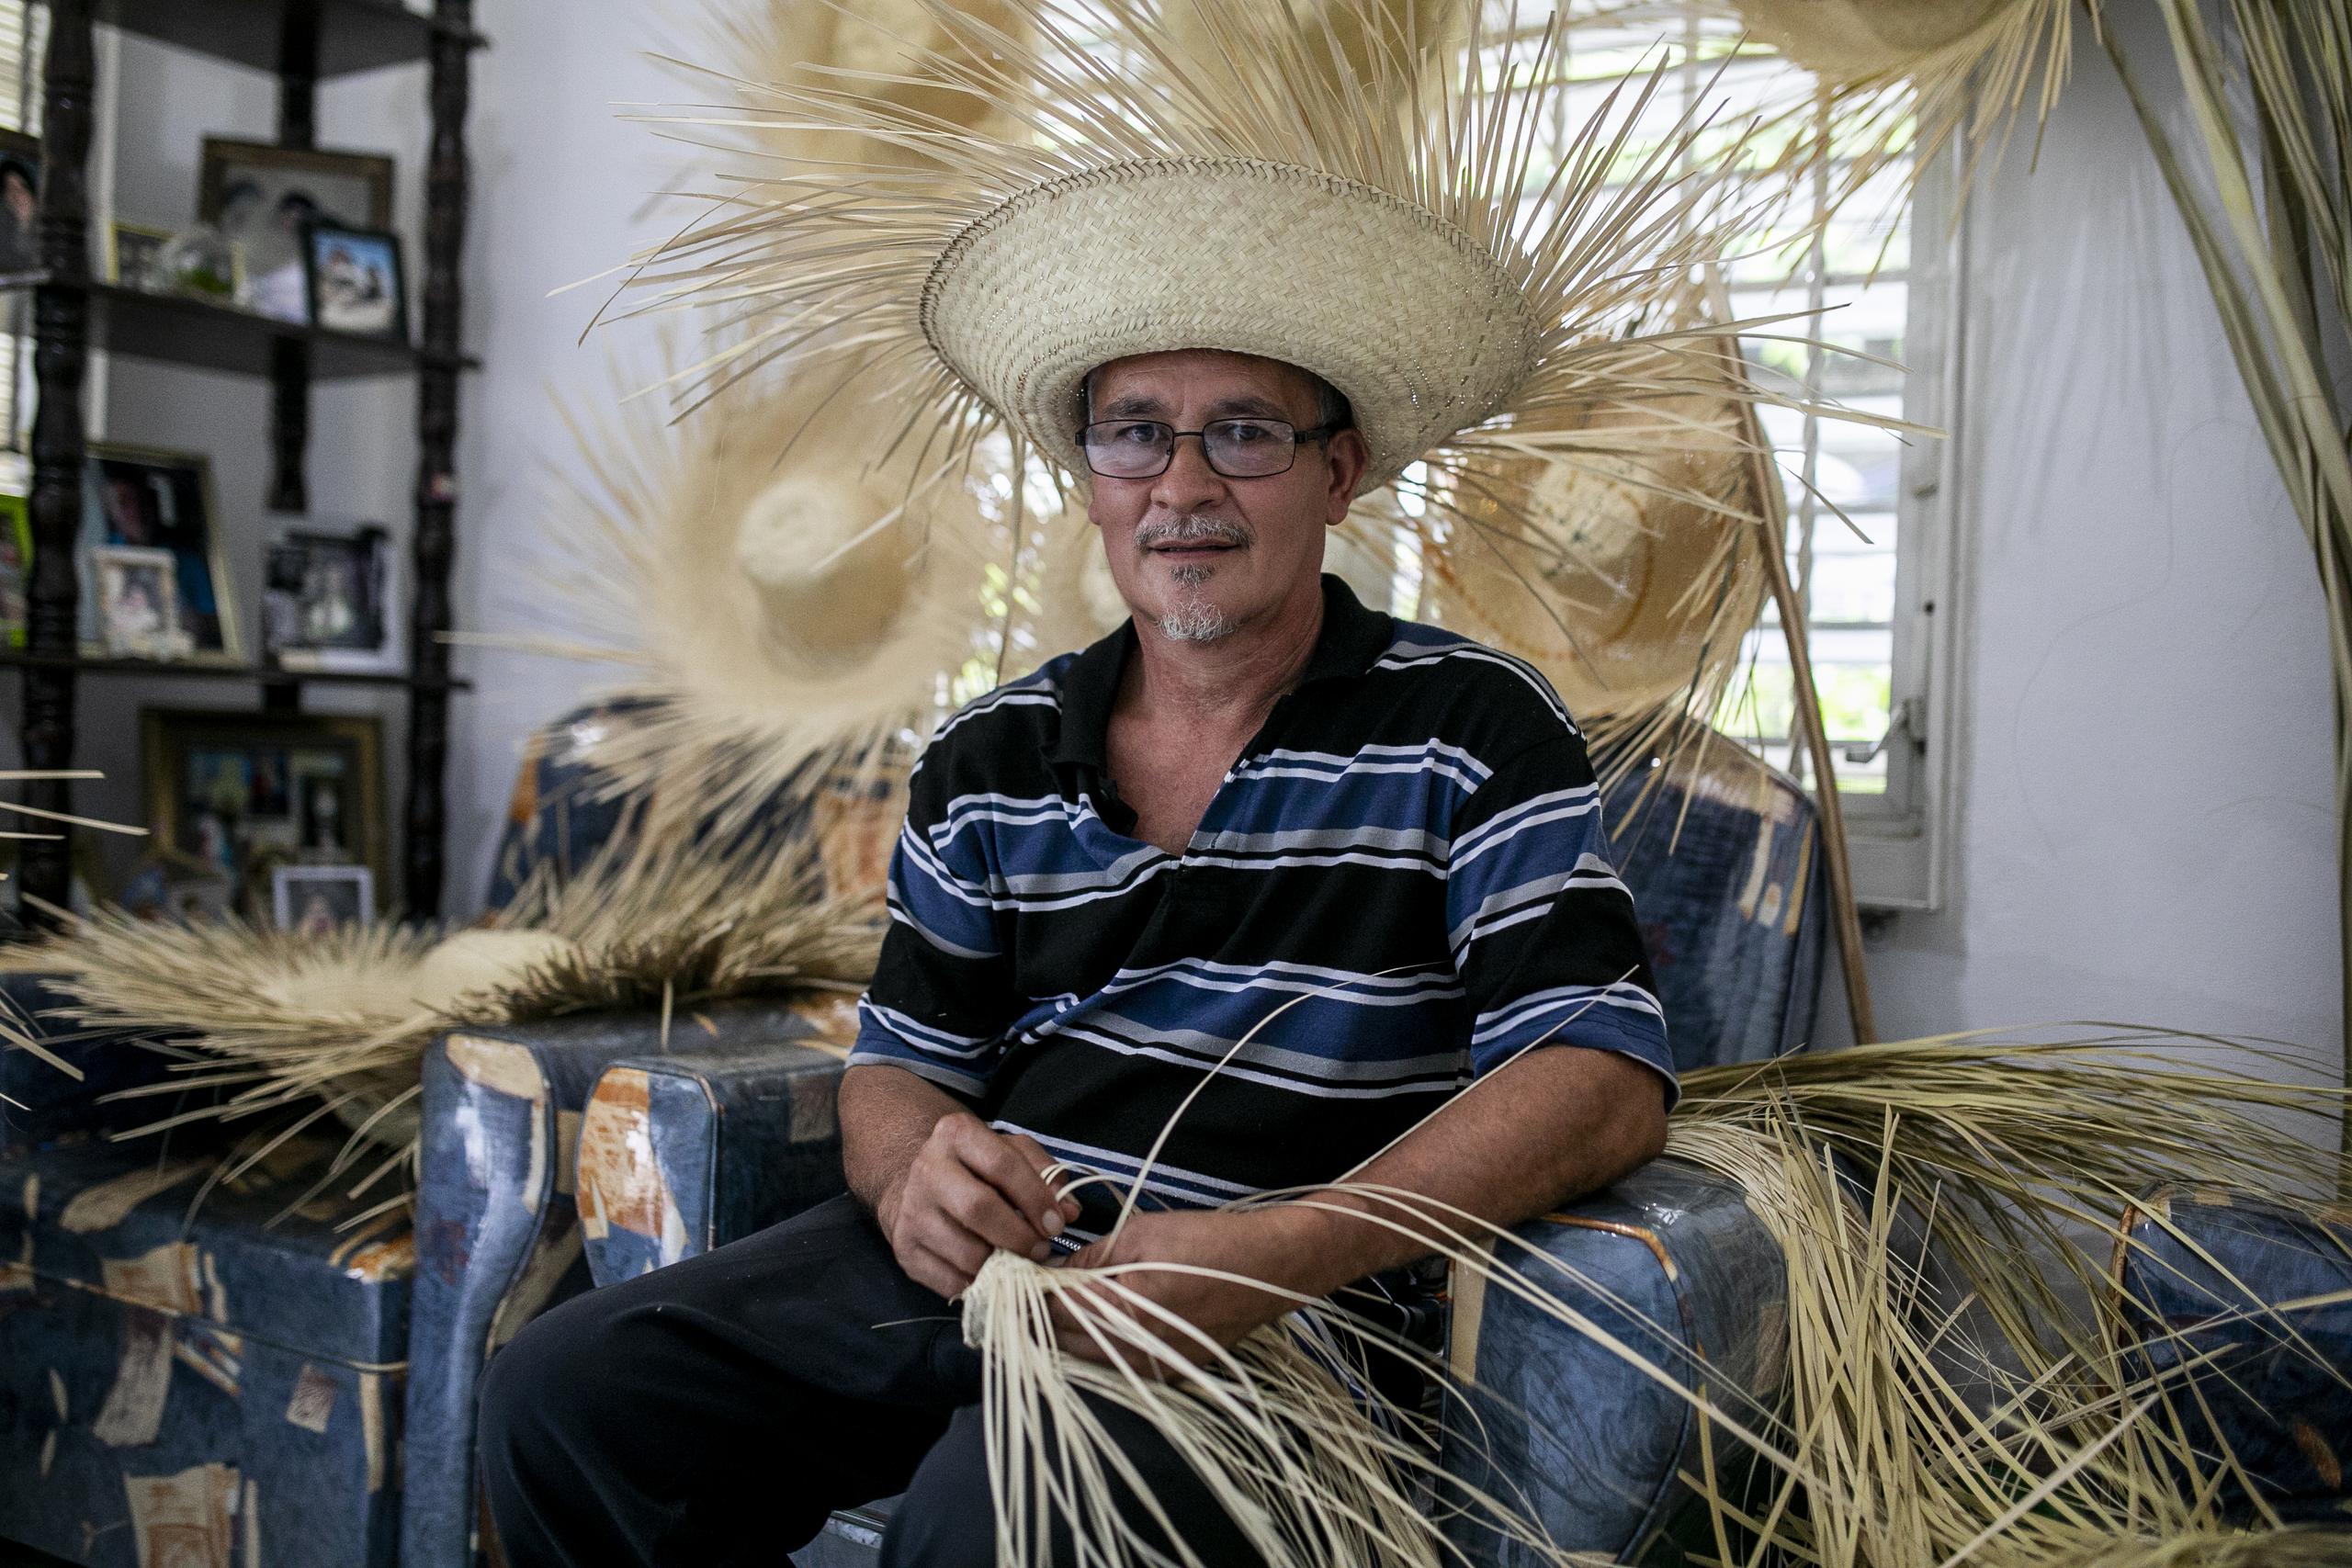 El tiempo que le dedica a sus artesanías es al terminar su jornada de trabajo regular, cuando se sienta a entrelazar las hojas de palma frente al televisor en su casa, en el barrio Cerro Gordo.